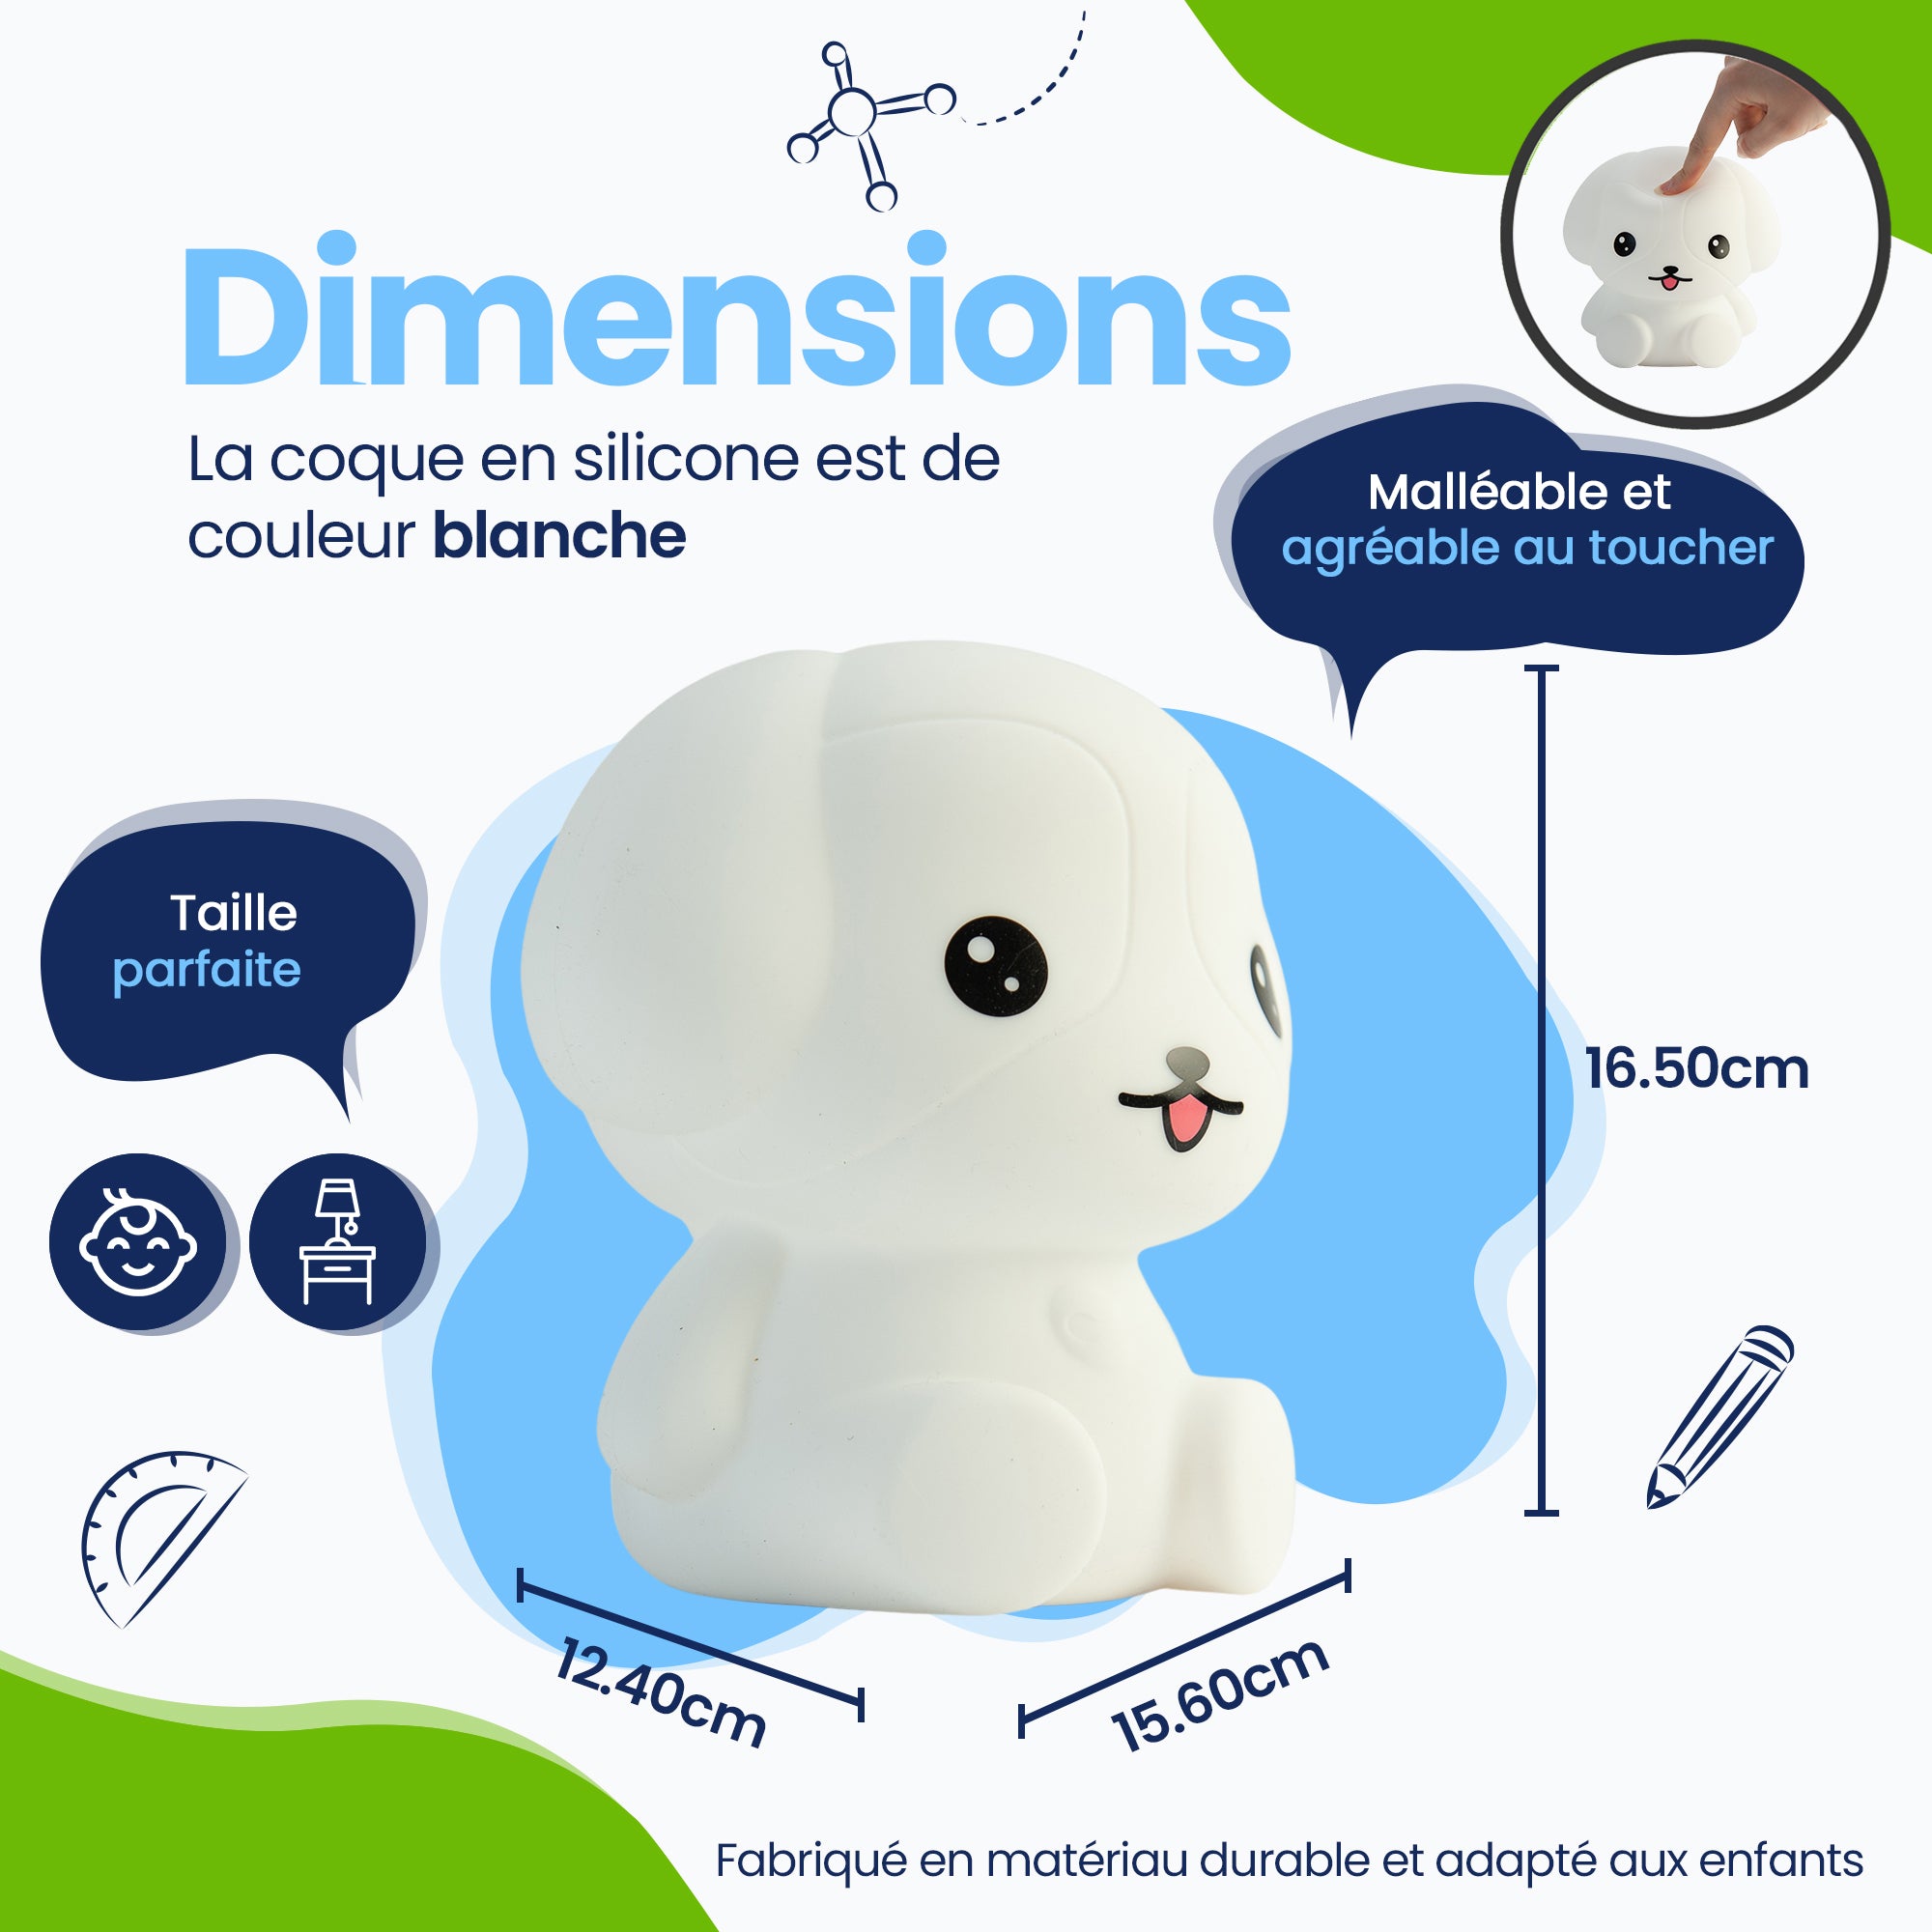 Dimensions Veilleuse Puppy - Taille parfaite - Design Premium - Le couvercle en silicone est de couleur blanche